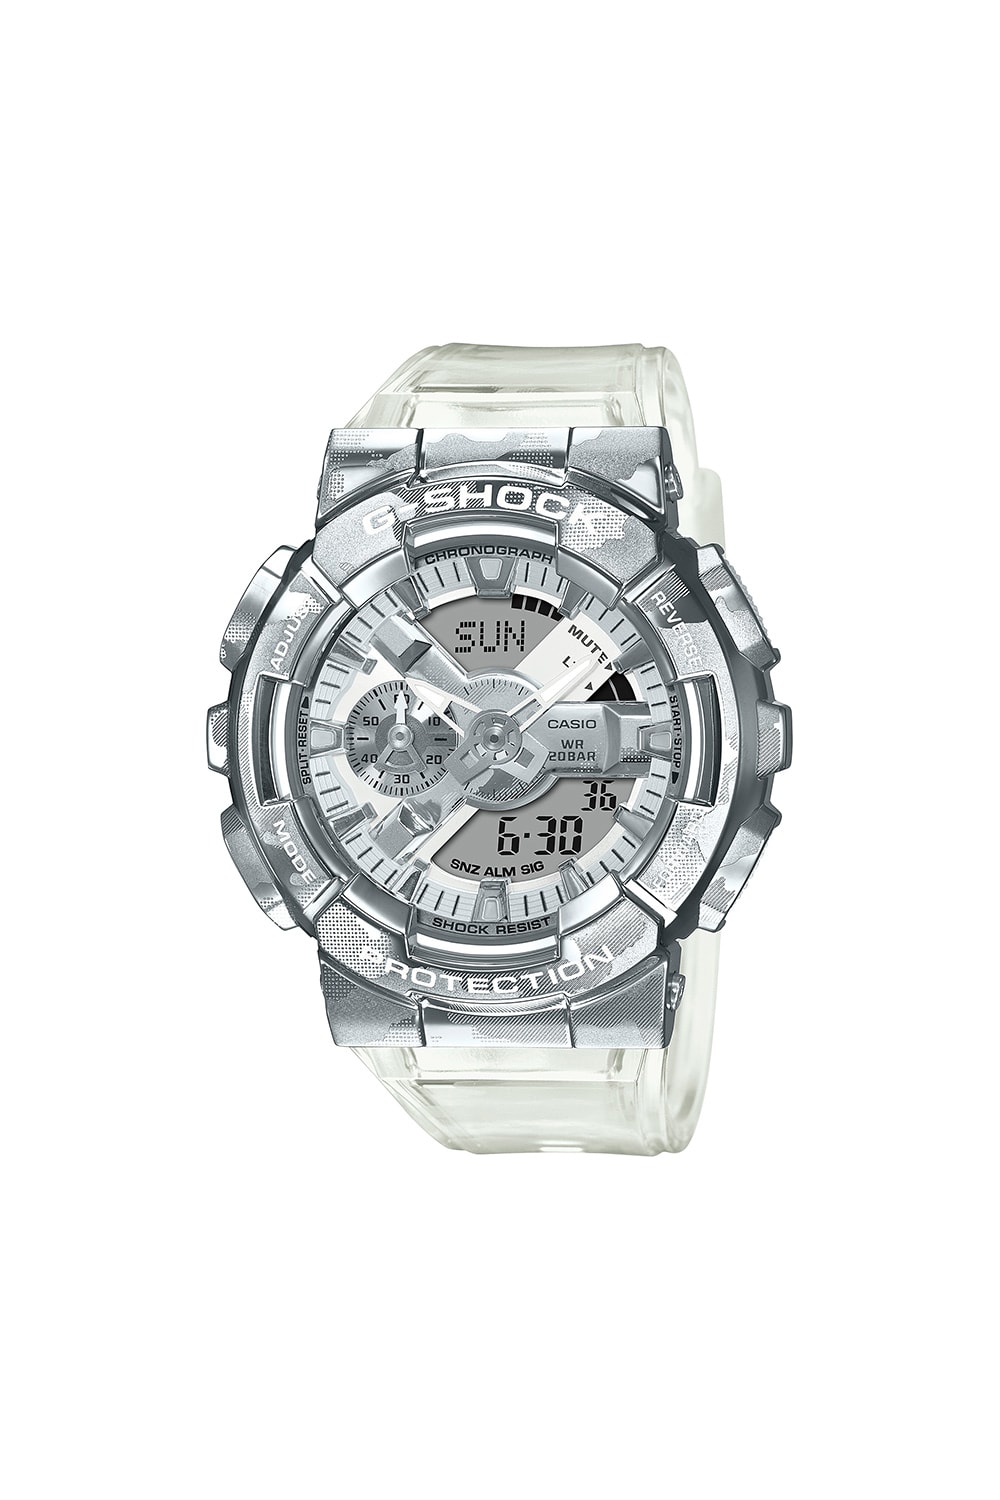 G-Shock 推出全新金屬錶殼系列錶款